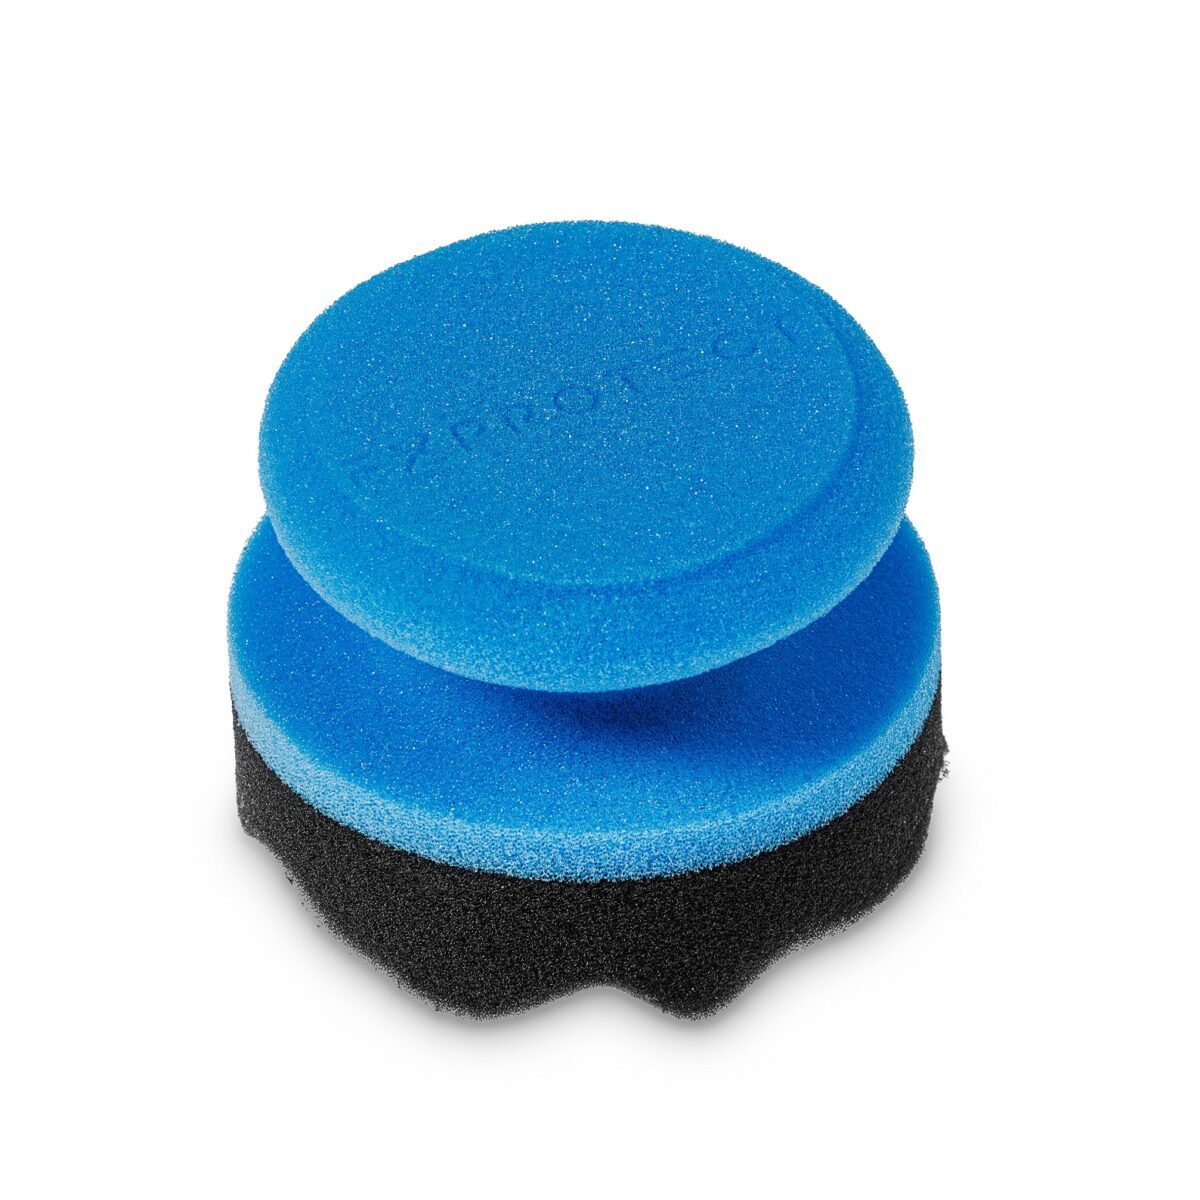 FX Protect Tire Applicator spužvasti aplikator za gume je aplikator koji će uvelike olakšati premazivanje guma s dressingom. Poseban oblik spužve garantira premazivanje svih nabora i utora na gumama.